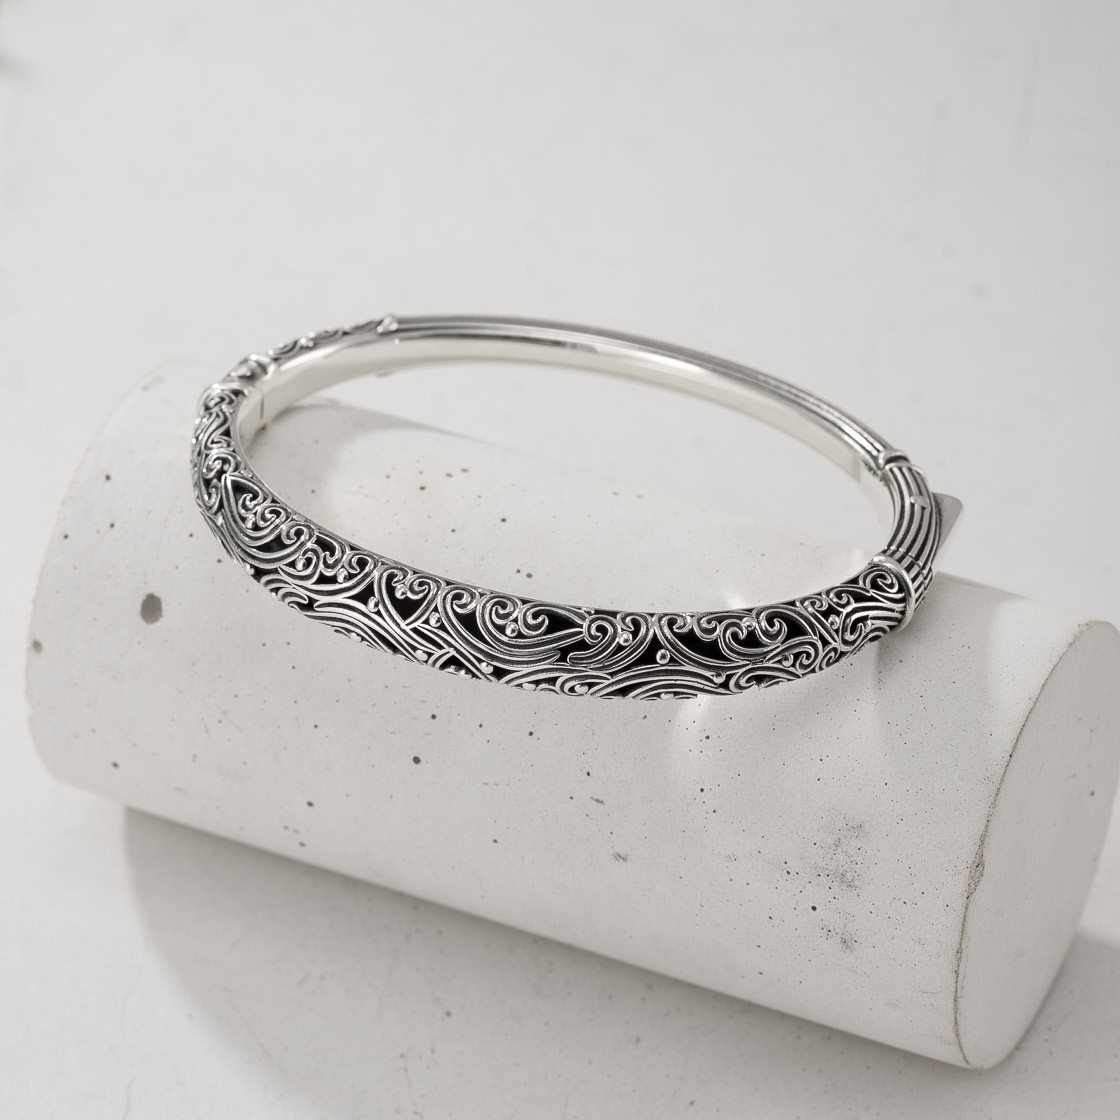 Kynthia Bracelet in Sterling Silver